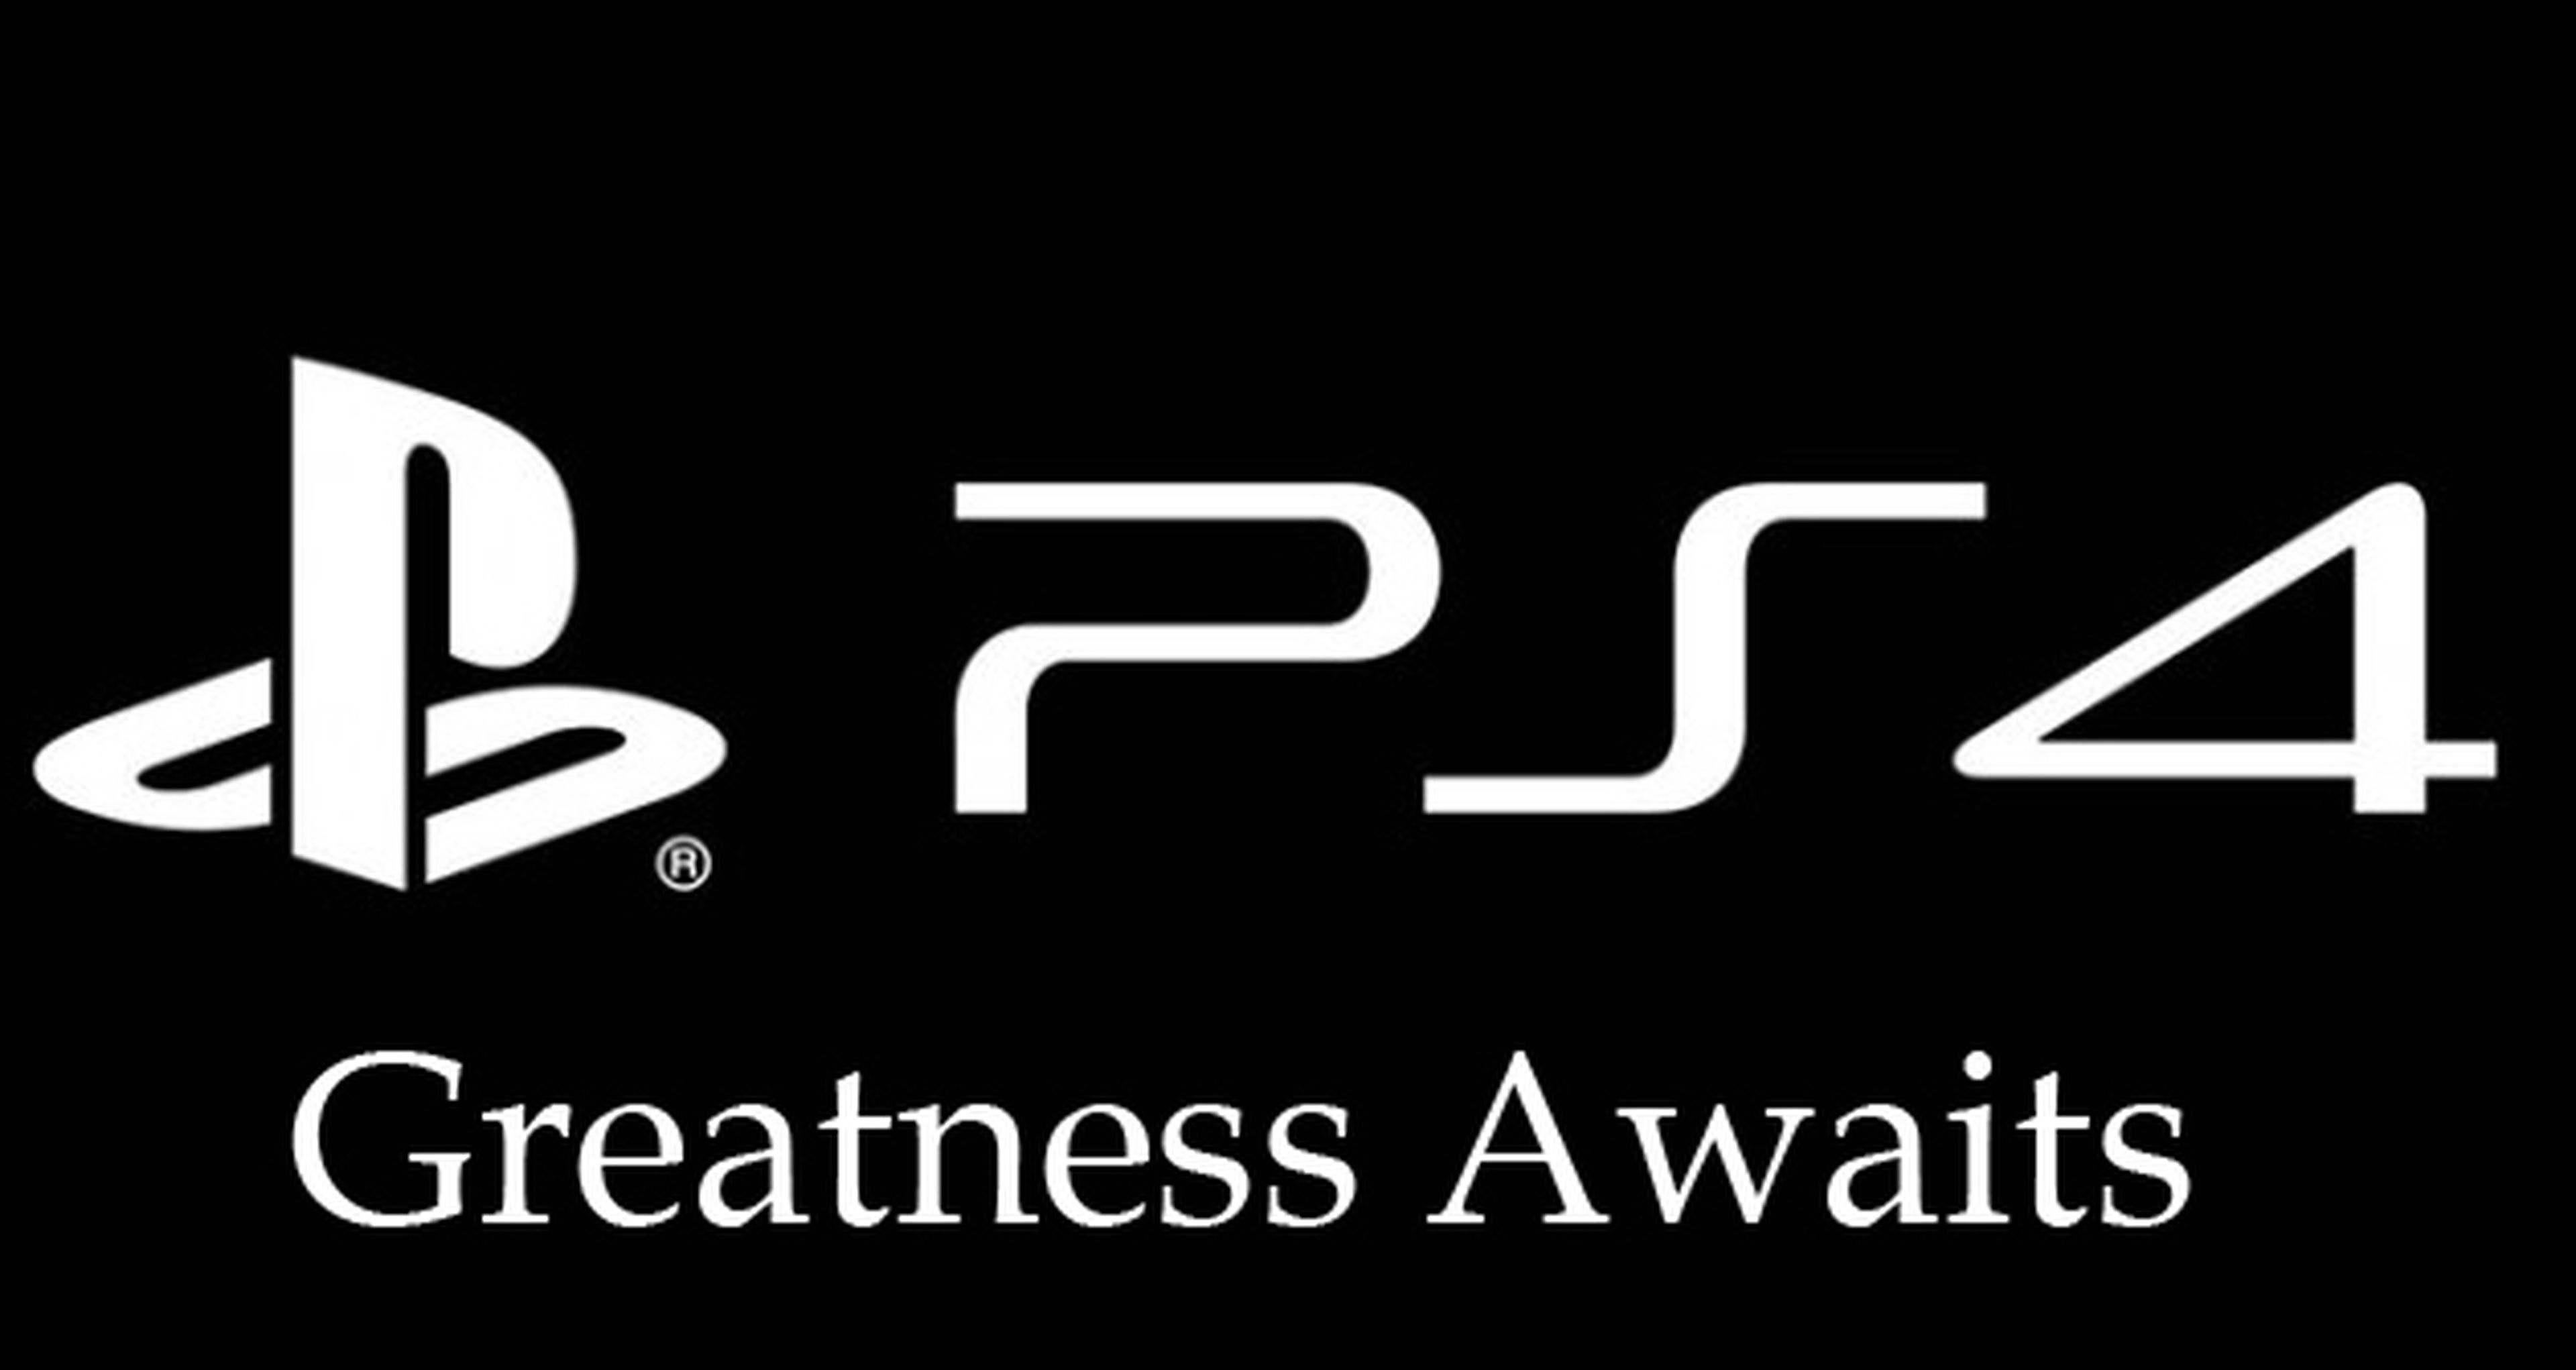 &quot;La grandeza aguarda&quot;, ¿el slogan de Sony para PS4?